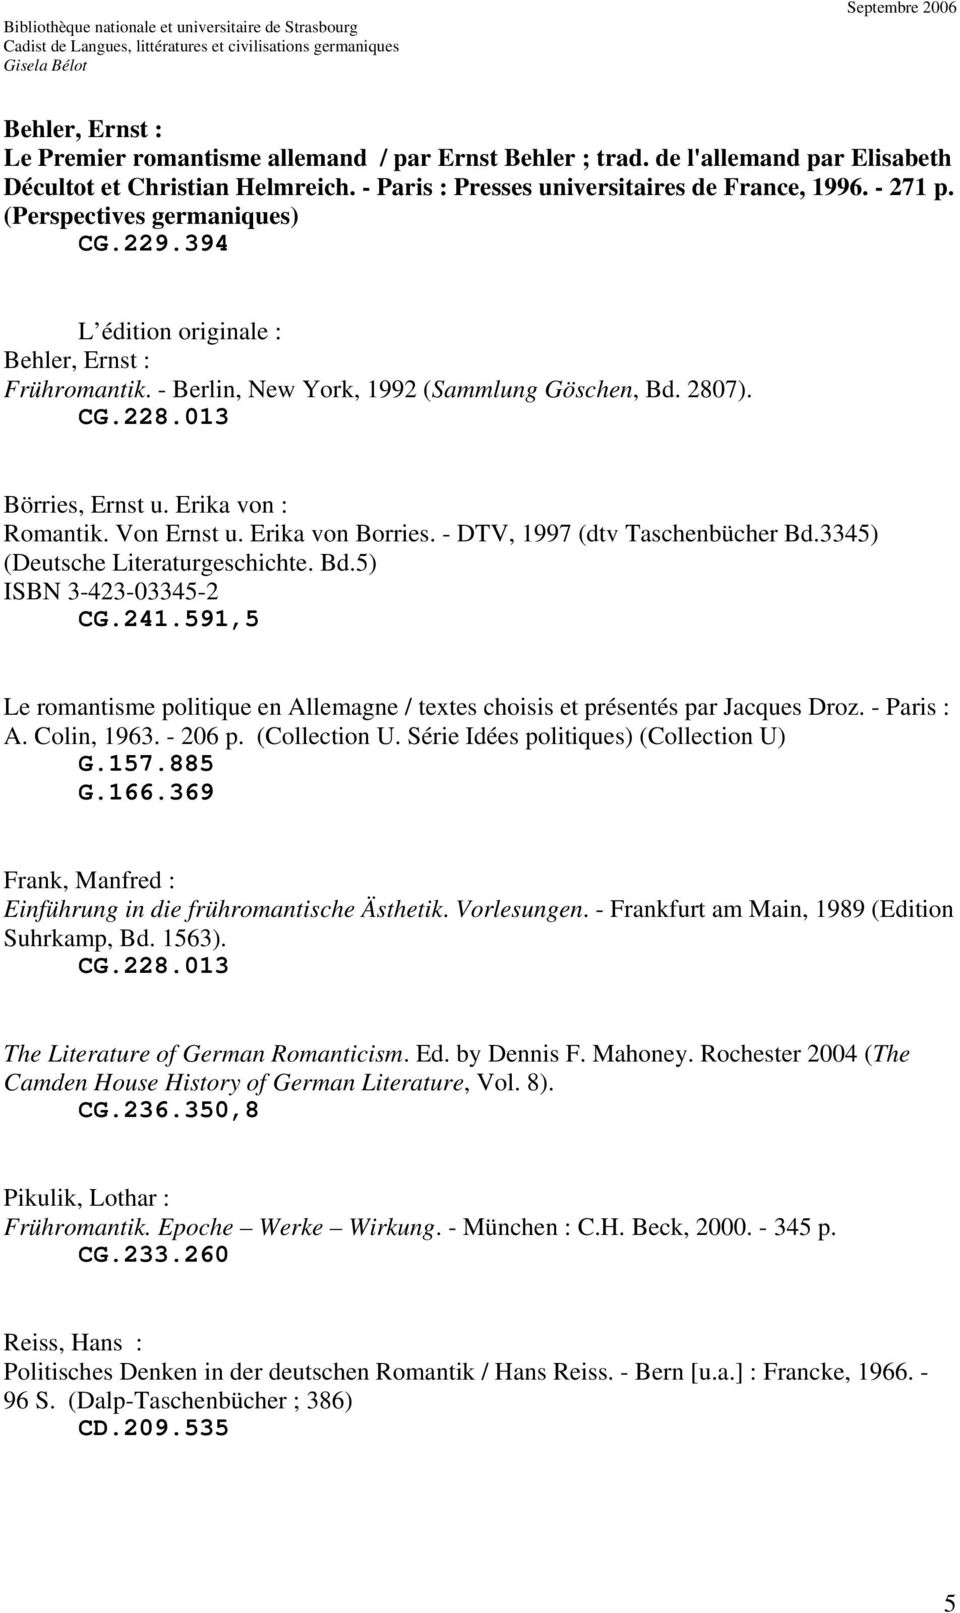 Von Ernst u. Erika von Borries. - DTV, 1997 (dtv Taschenbücher Bd.3345) (Deutsche Literaturgeschichte. Bd.5) ISBN 3-423-03345-2 CG.241.